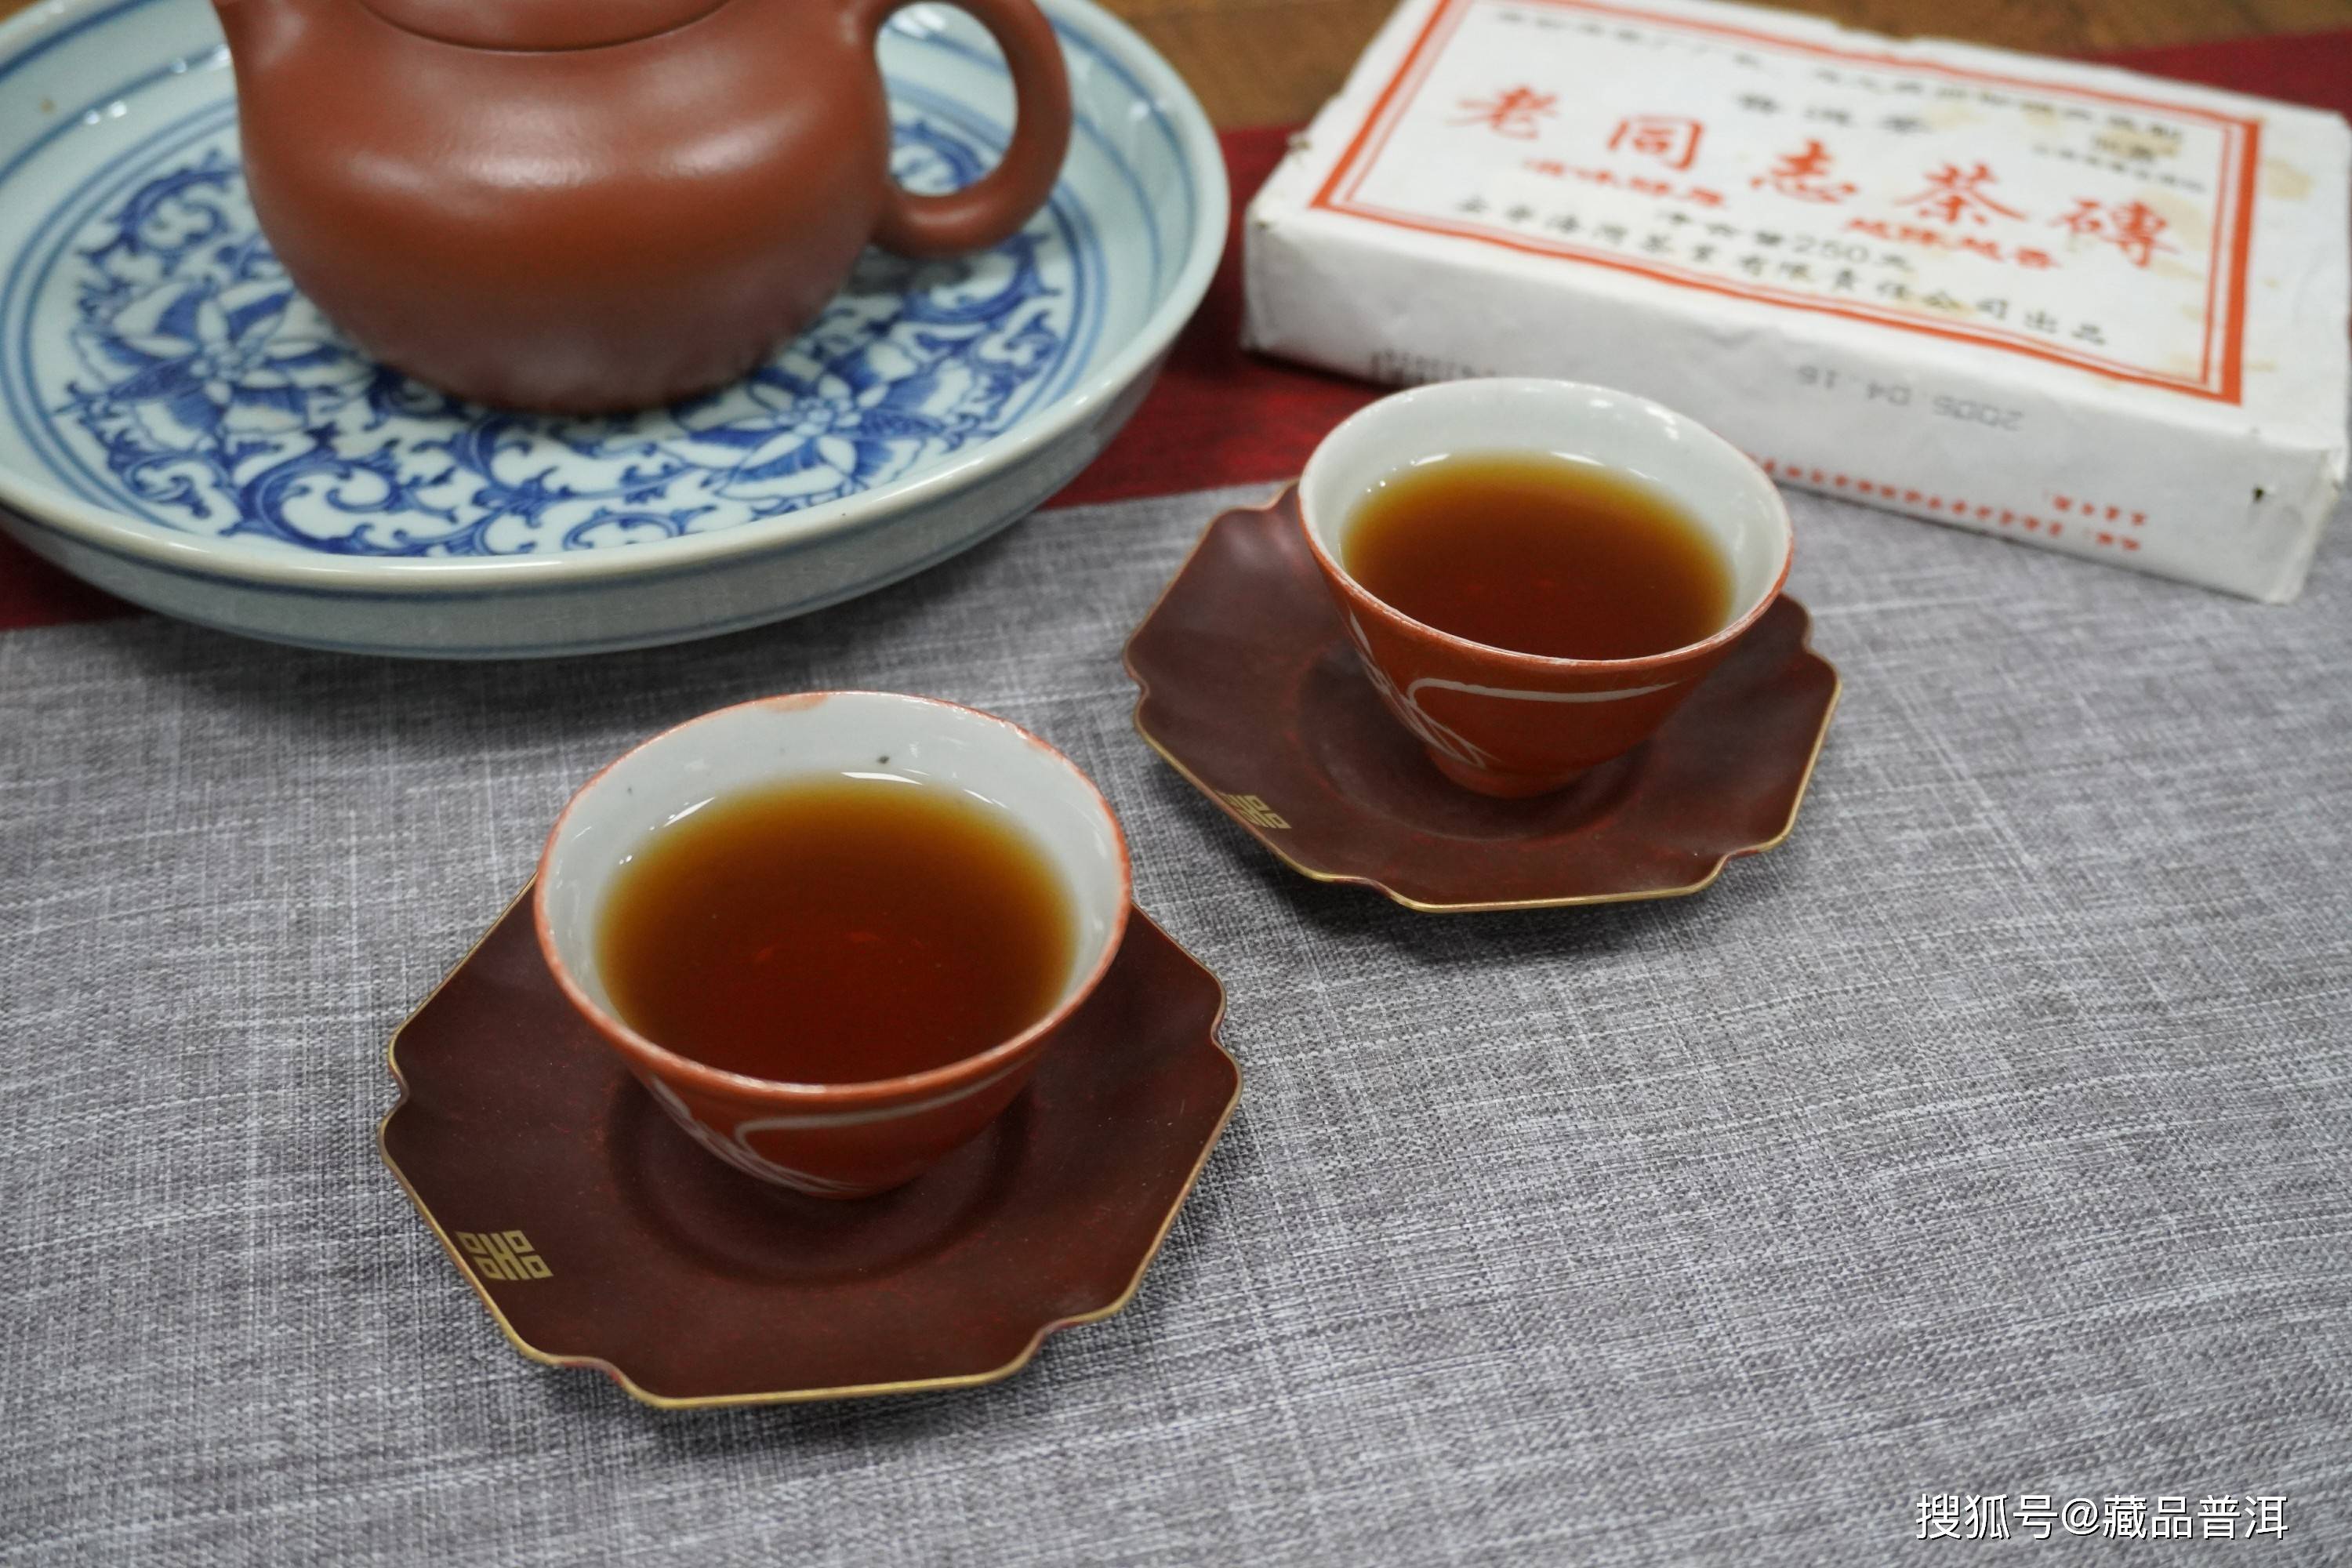 老同志普洱熟茶之06竹片熟砖,进阶版的口粮熟茶!熟茶之父邹炳良监制